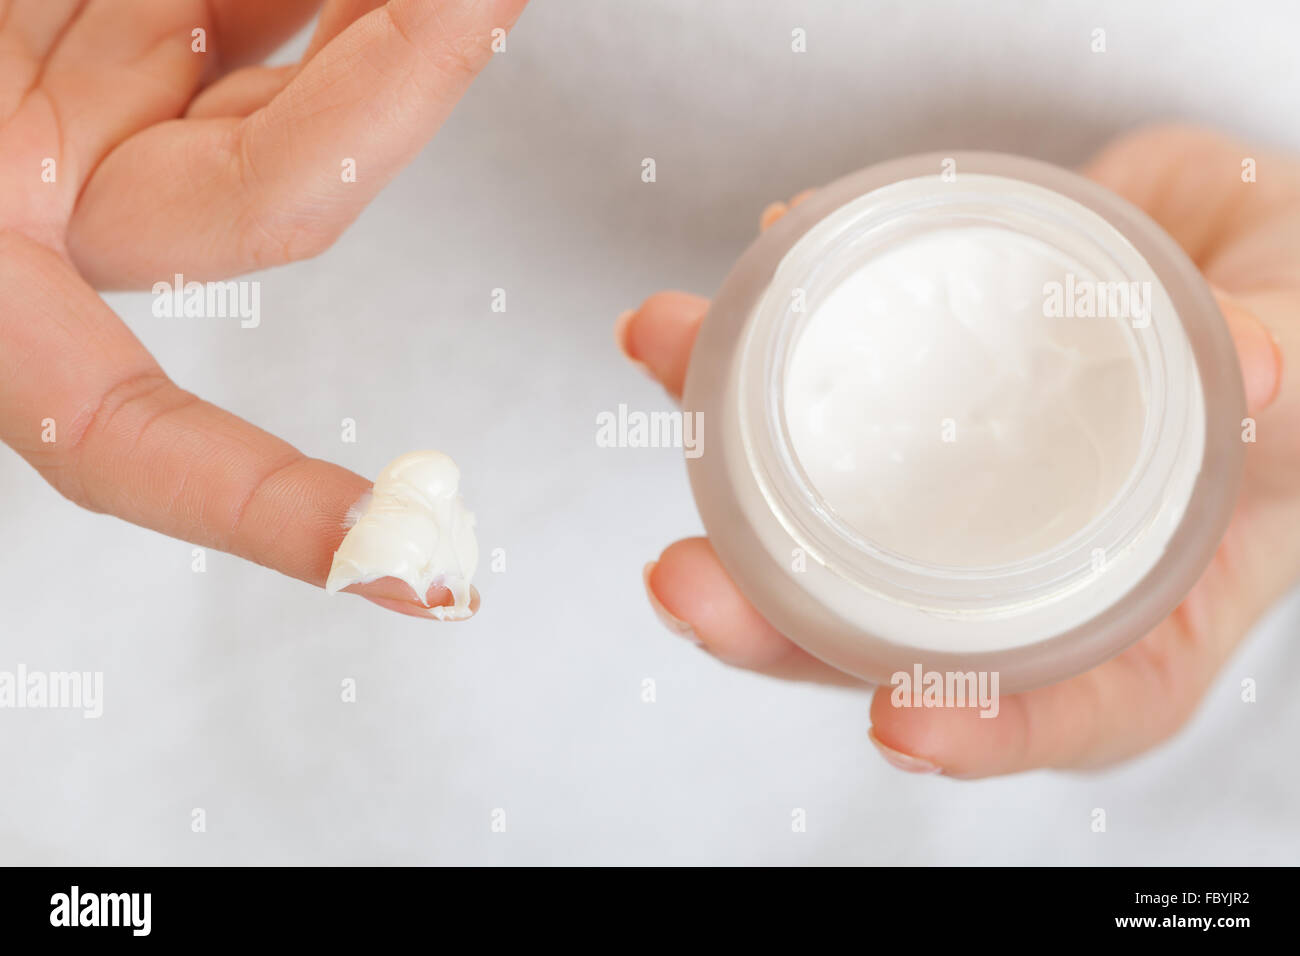 Cuidado de la piel. Chica aplicar crema hidratante. Foto de stock